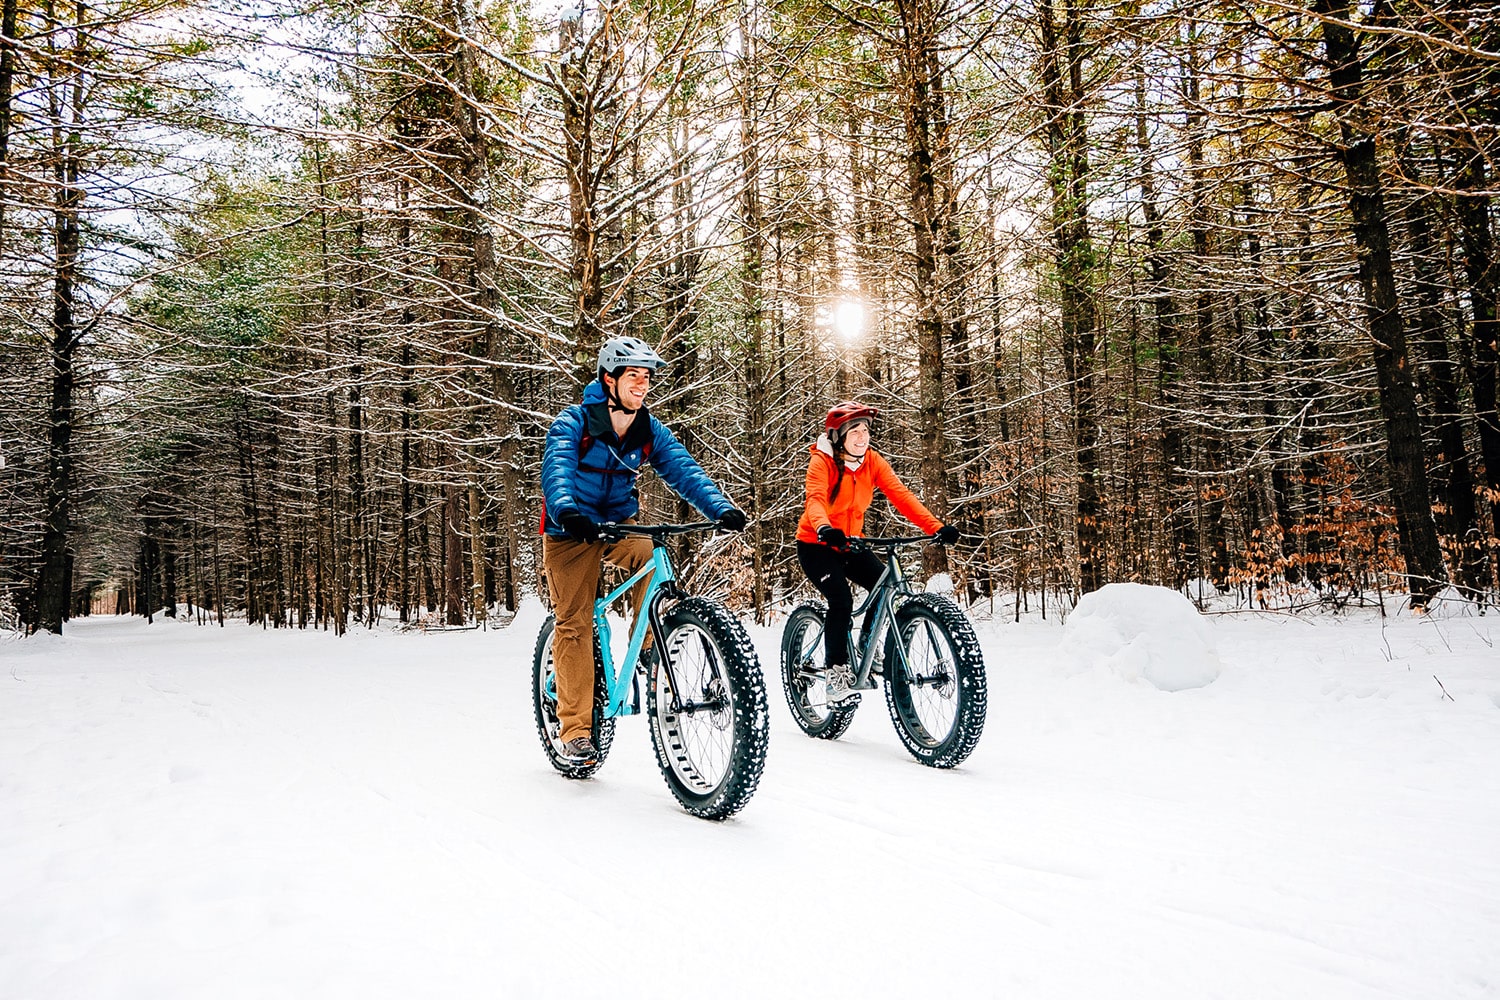 2 people mountain biking in the snow